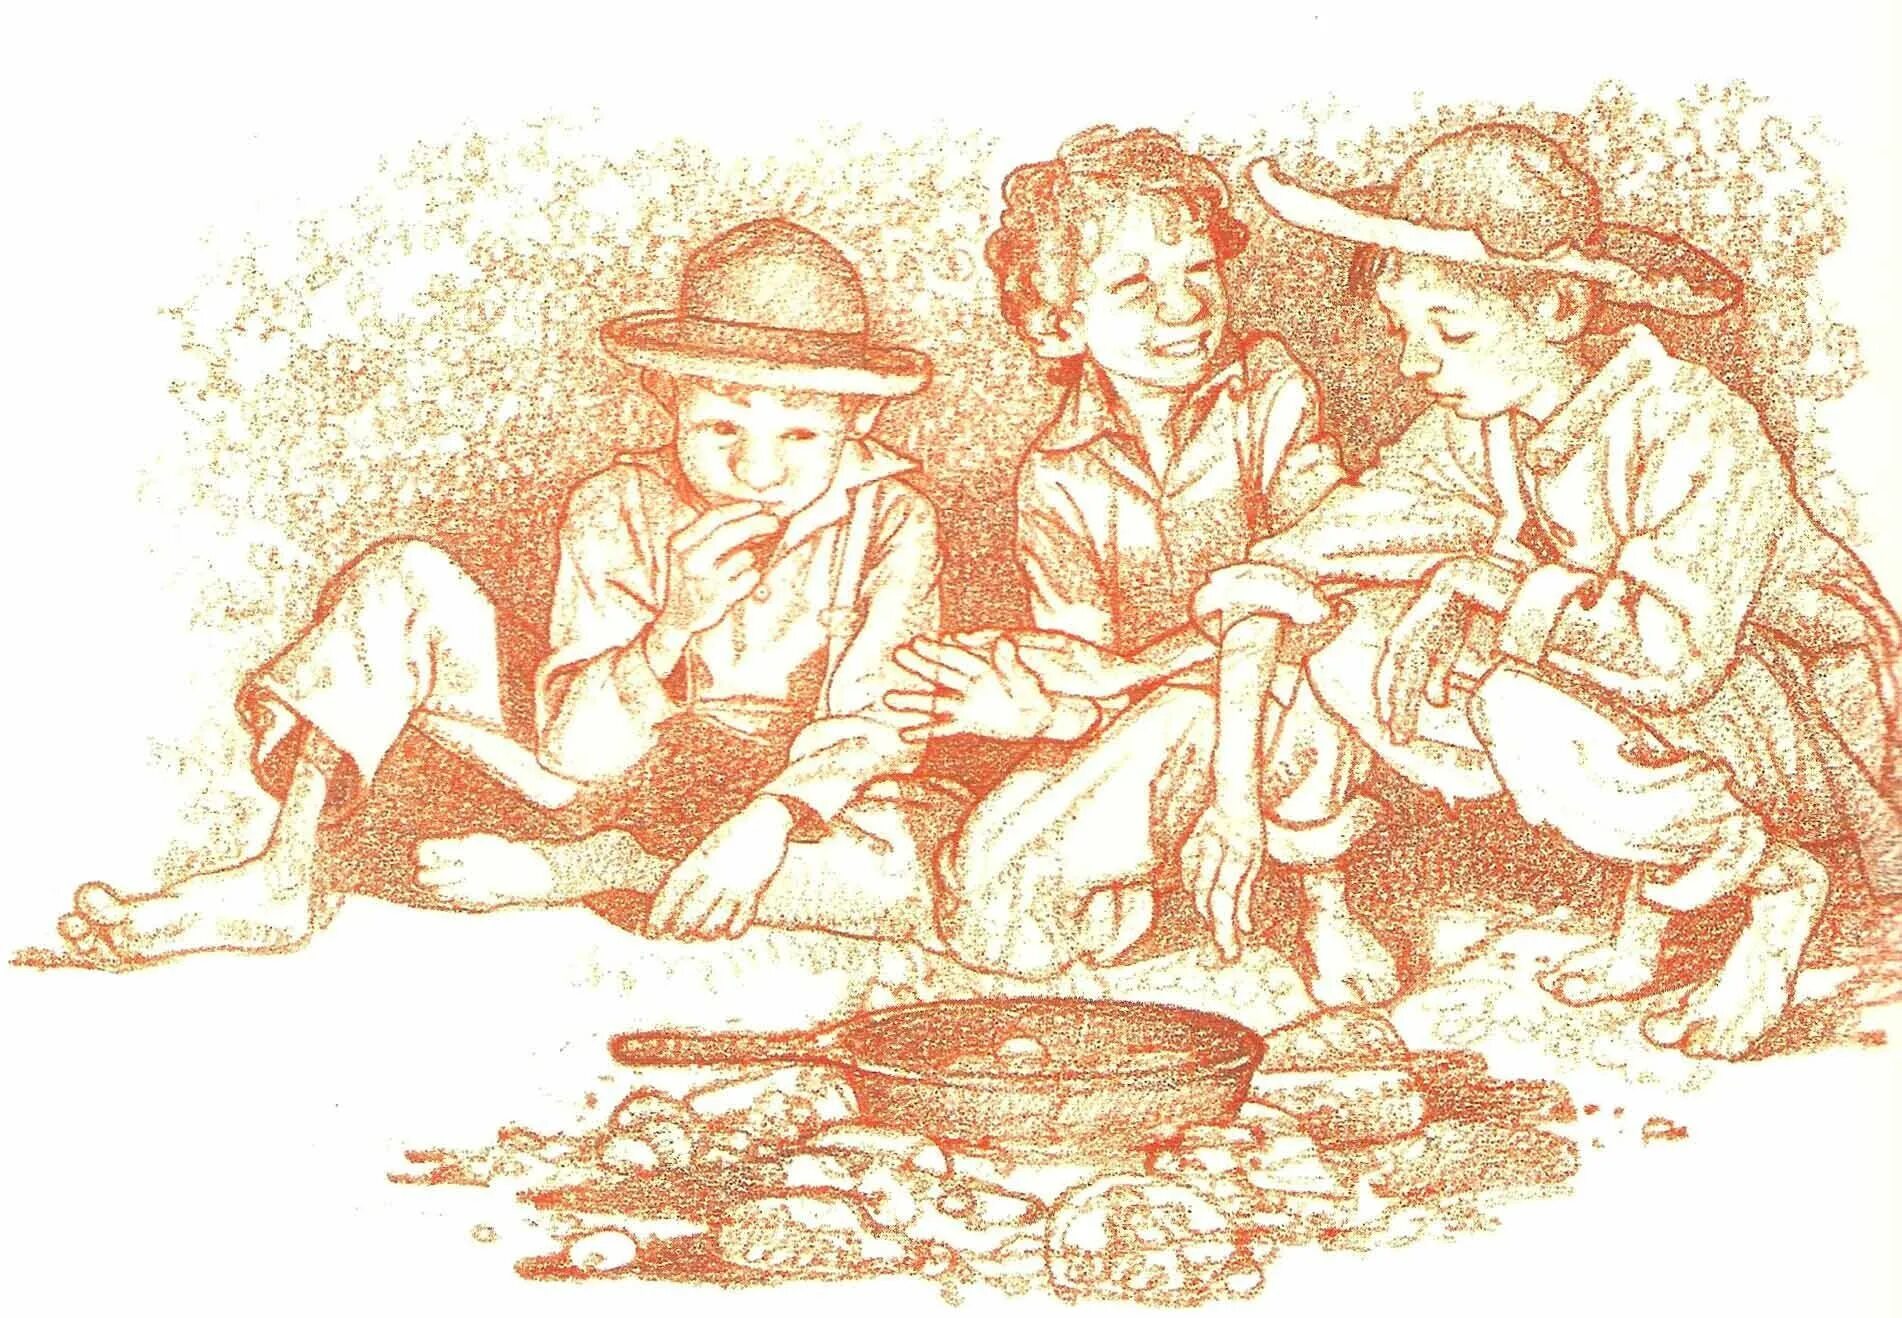 ТМ сйер. Том Сойер и Гек Финн иллюстрации. Том Сойер на острове. Иллюстрация Тома Сойера.